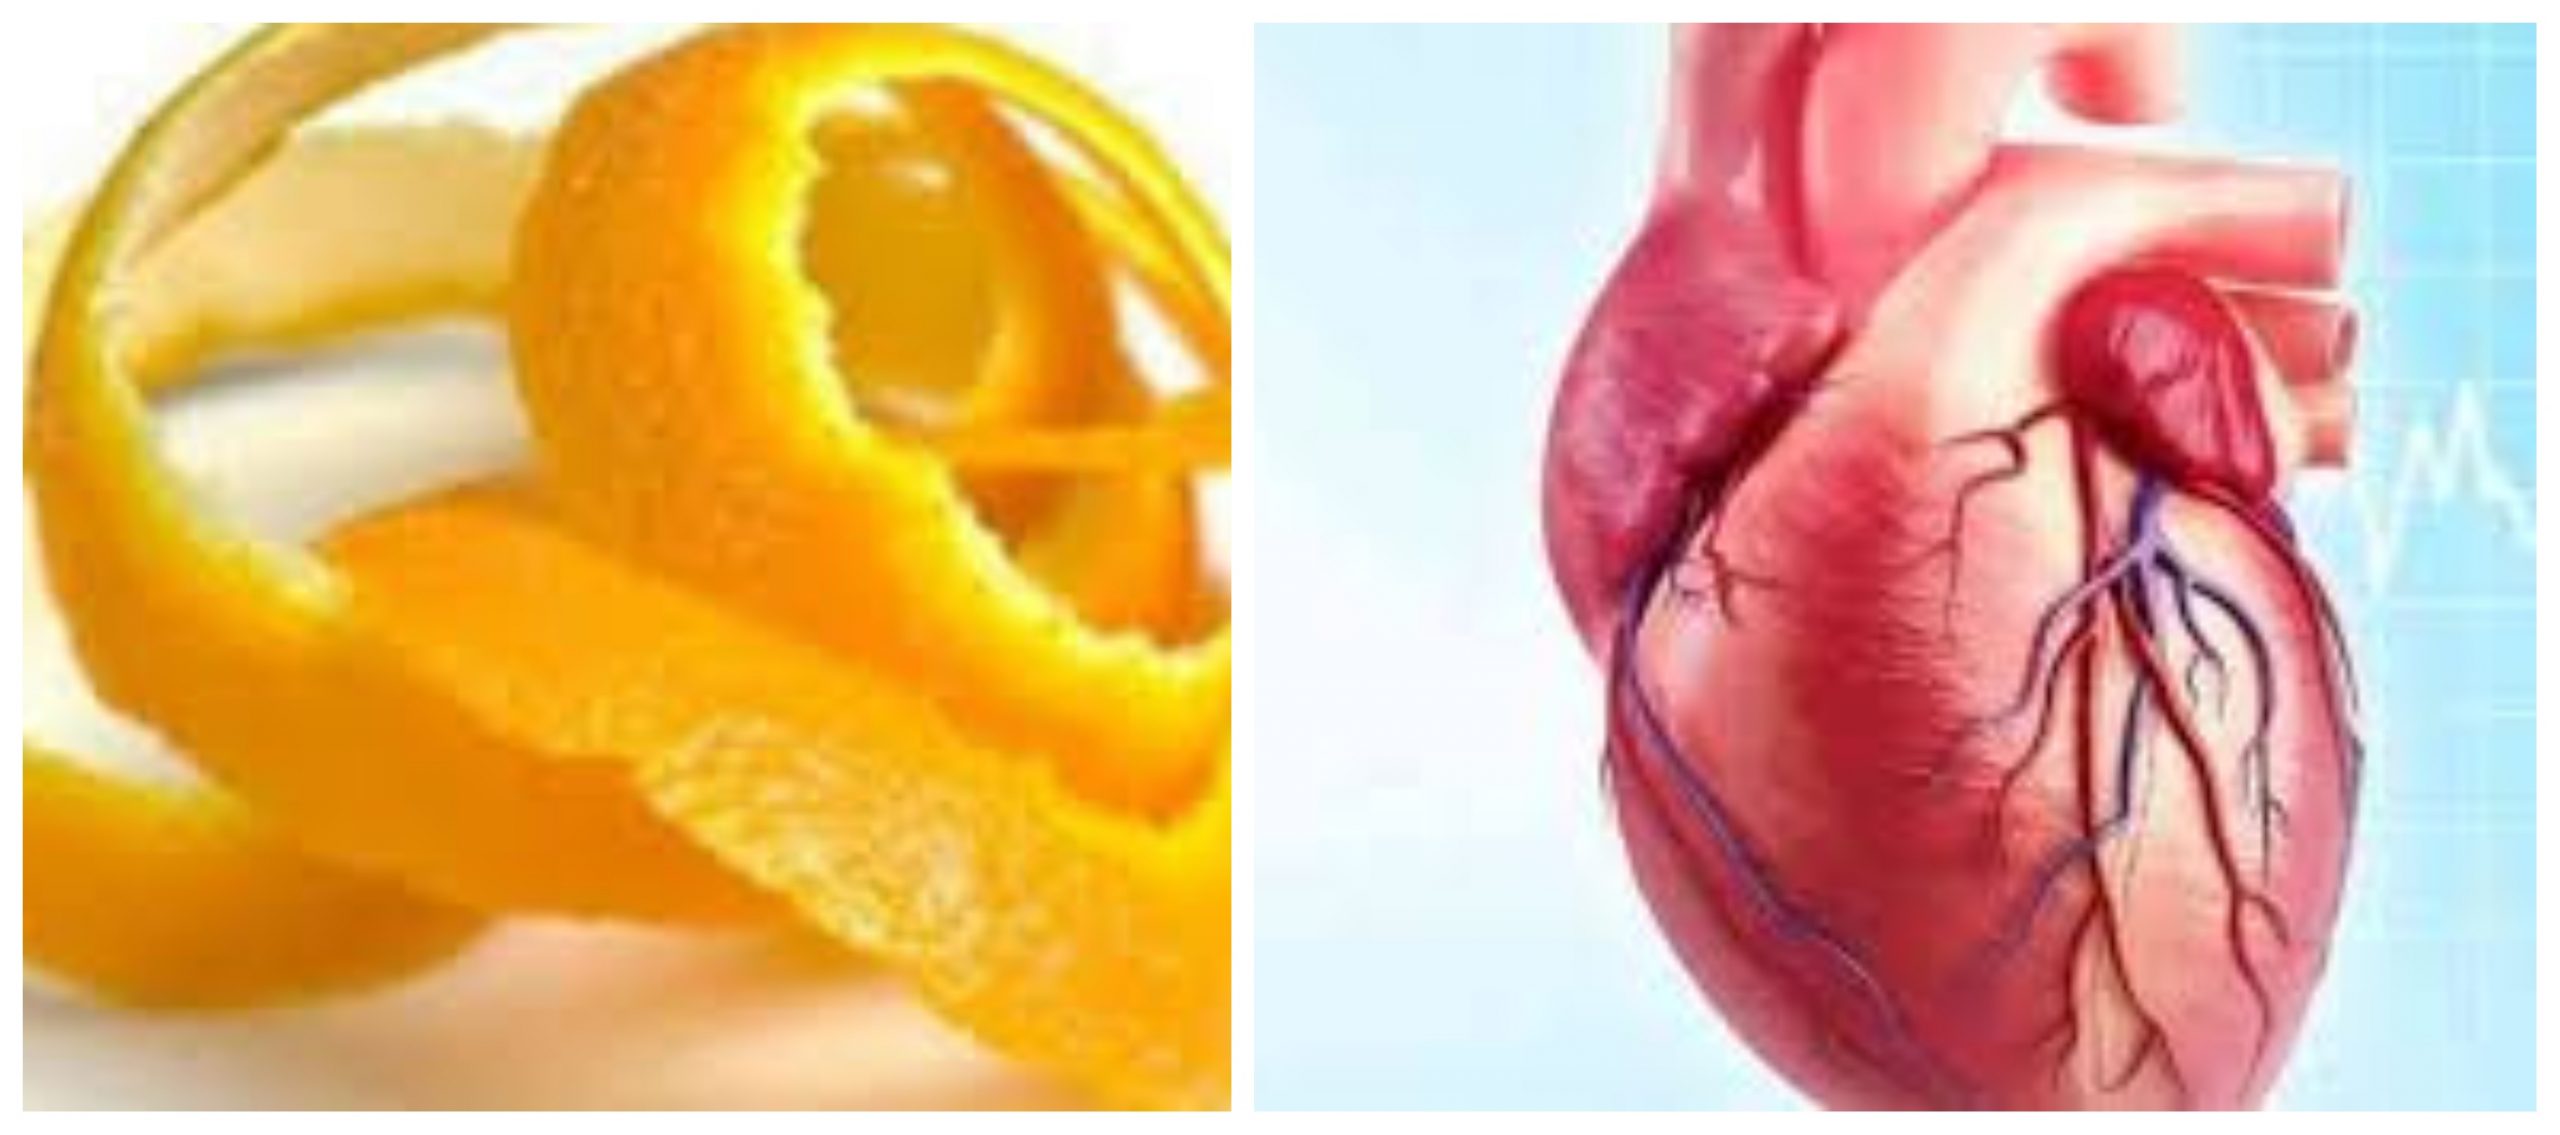 قشر البرتقال يدعم صحة القلب